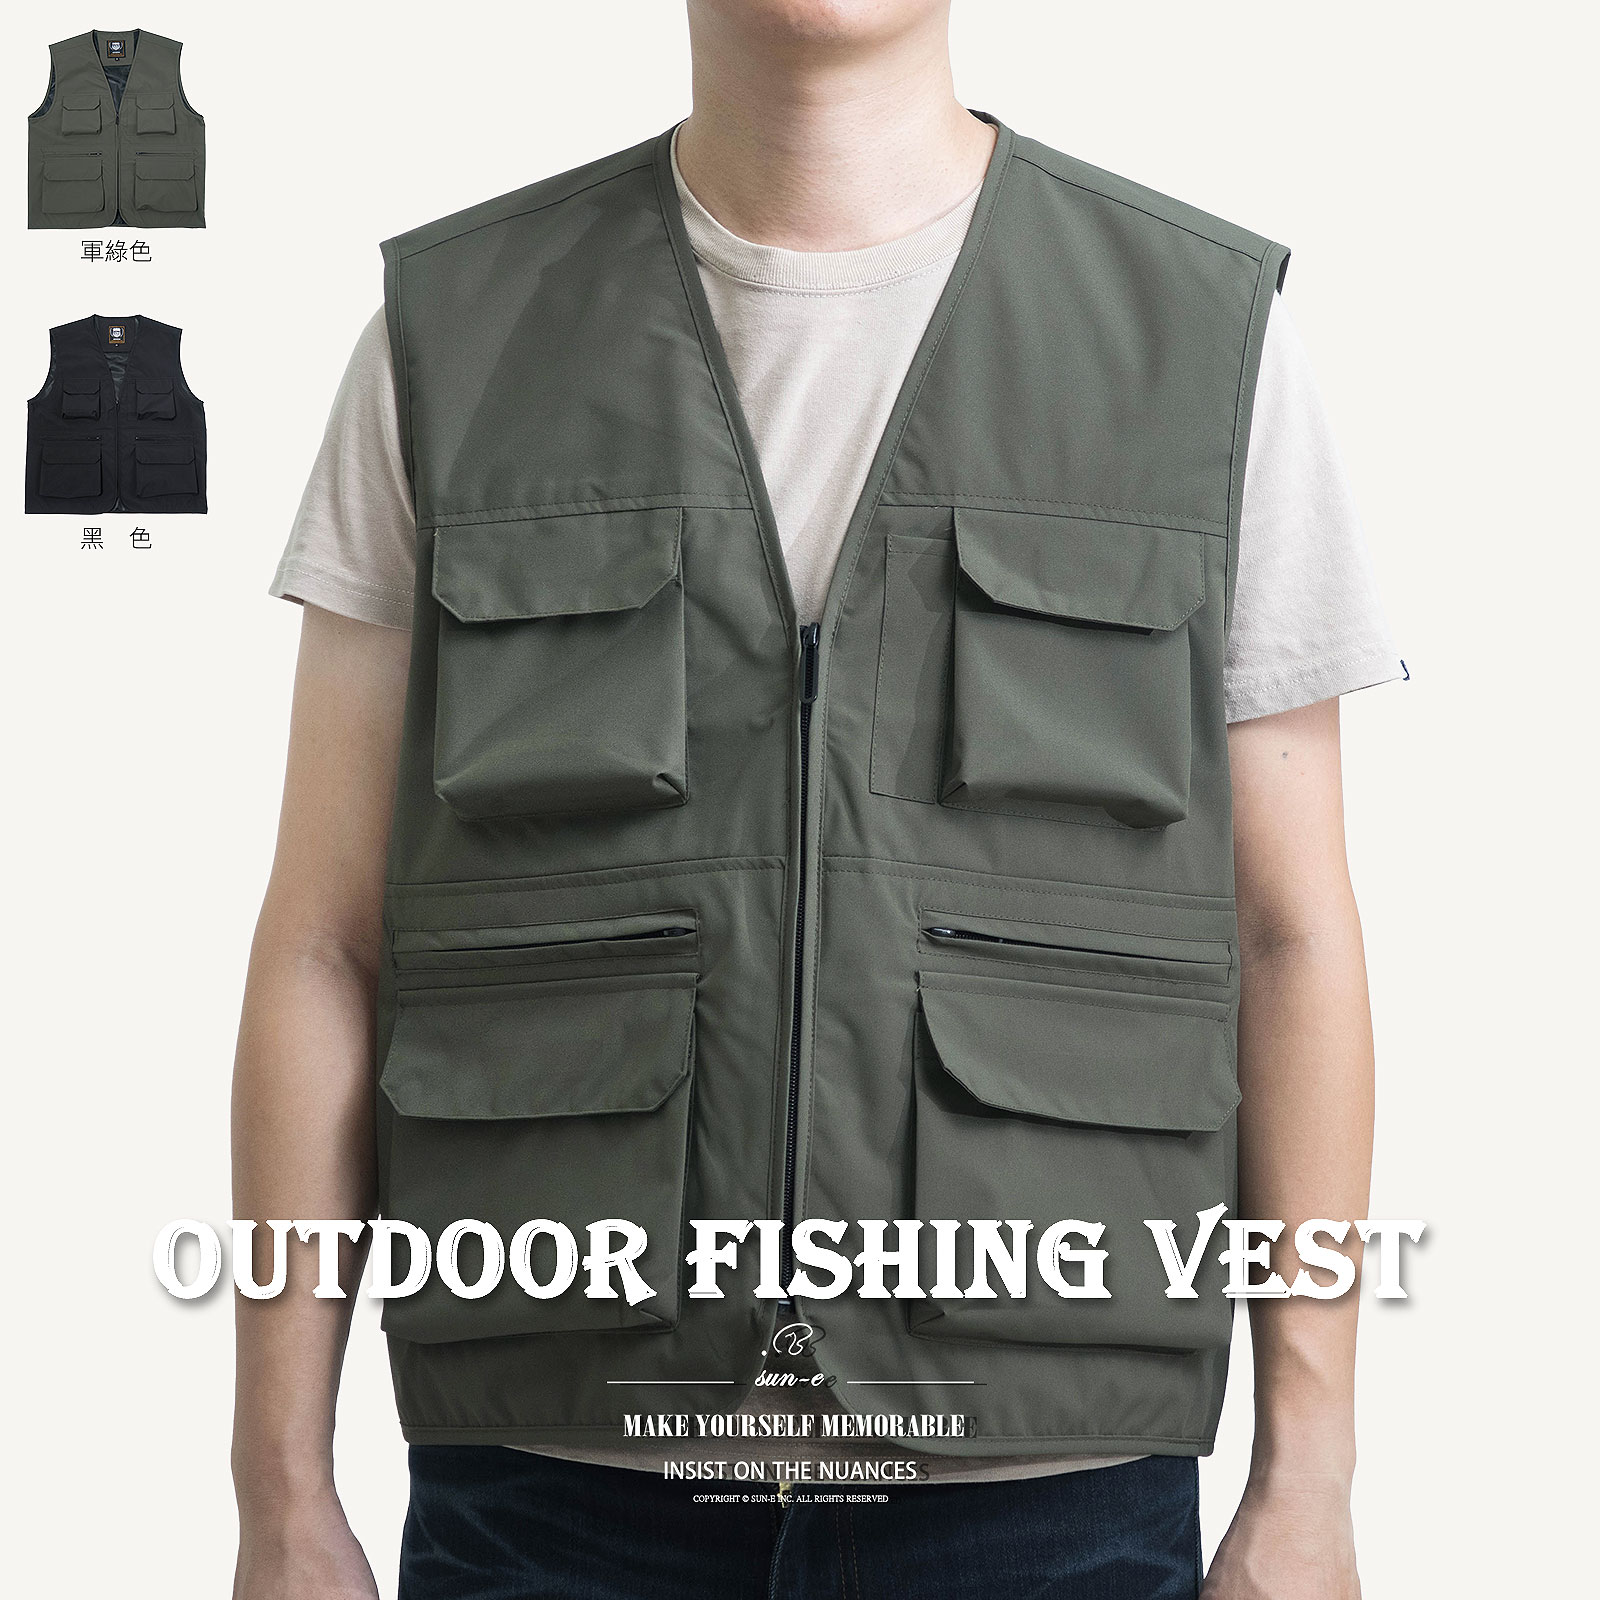 釣魚背心 工裝背心 多口袋背心 外搭背心 素面背心 背心外套 攝影背心 透氣網眼休閒背心 黑色背心 百搭背心 休閒馬甲 Fishing Vest Cargo Vest Casual Vest Plain Vest (312-8183-11)軍綠色、(312-8183-21)黑色 L XL 2L (胸圍:112~122公分 / 44~48英吋) 男 [實體店面保障] sun-e